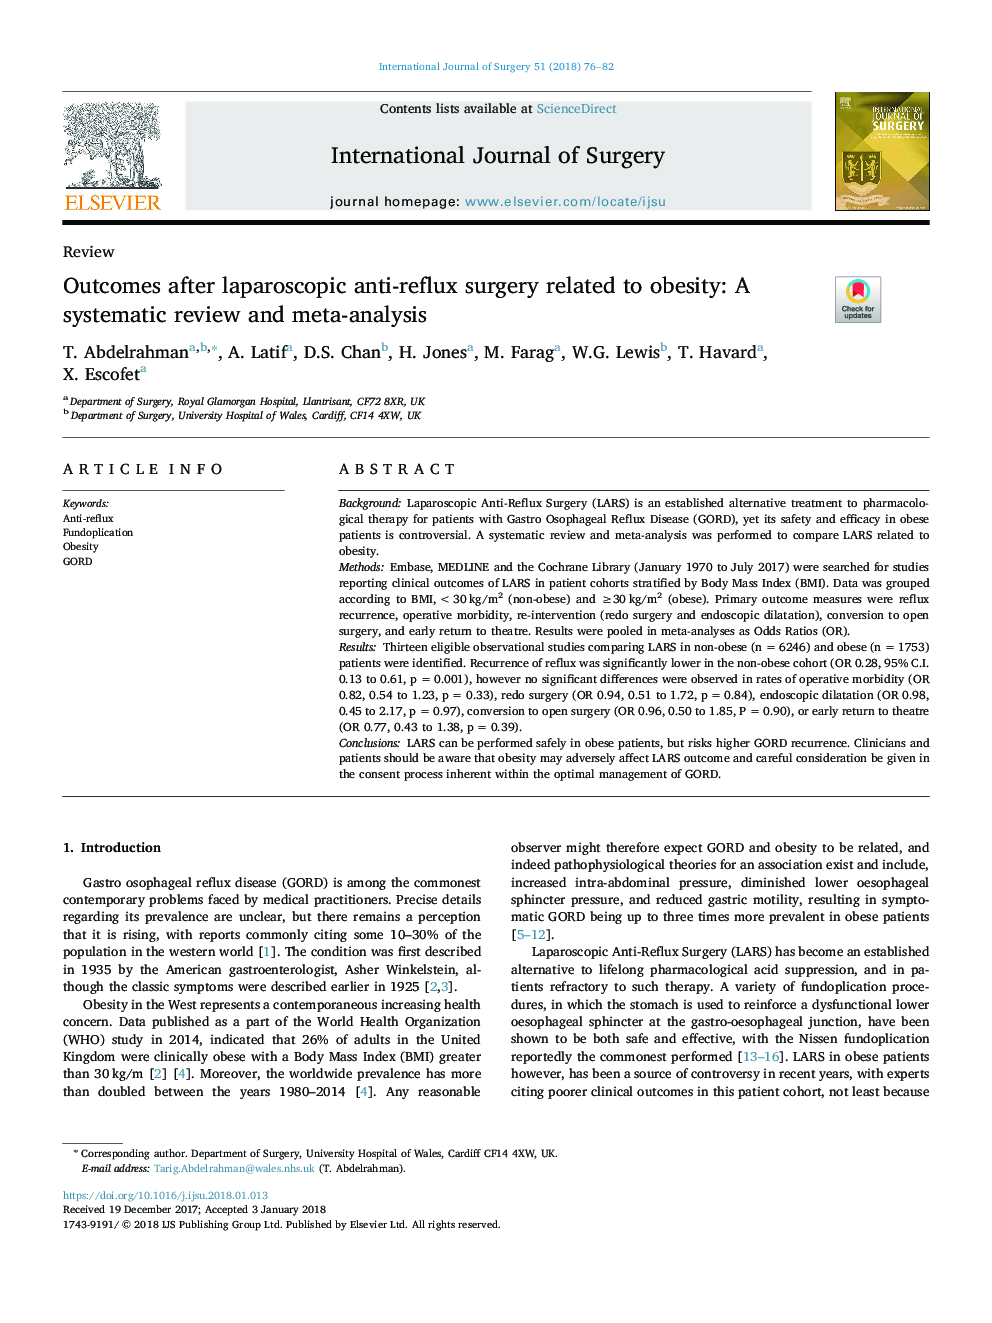 نتایج پس از جراحی لاپاروسکوپی ضد رفلاکس مربوط به چاقی: بررسی منظم و متاآنالیز 